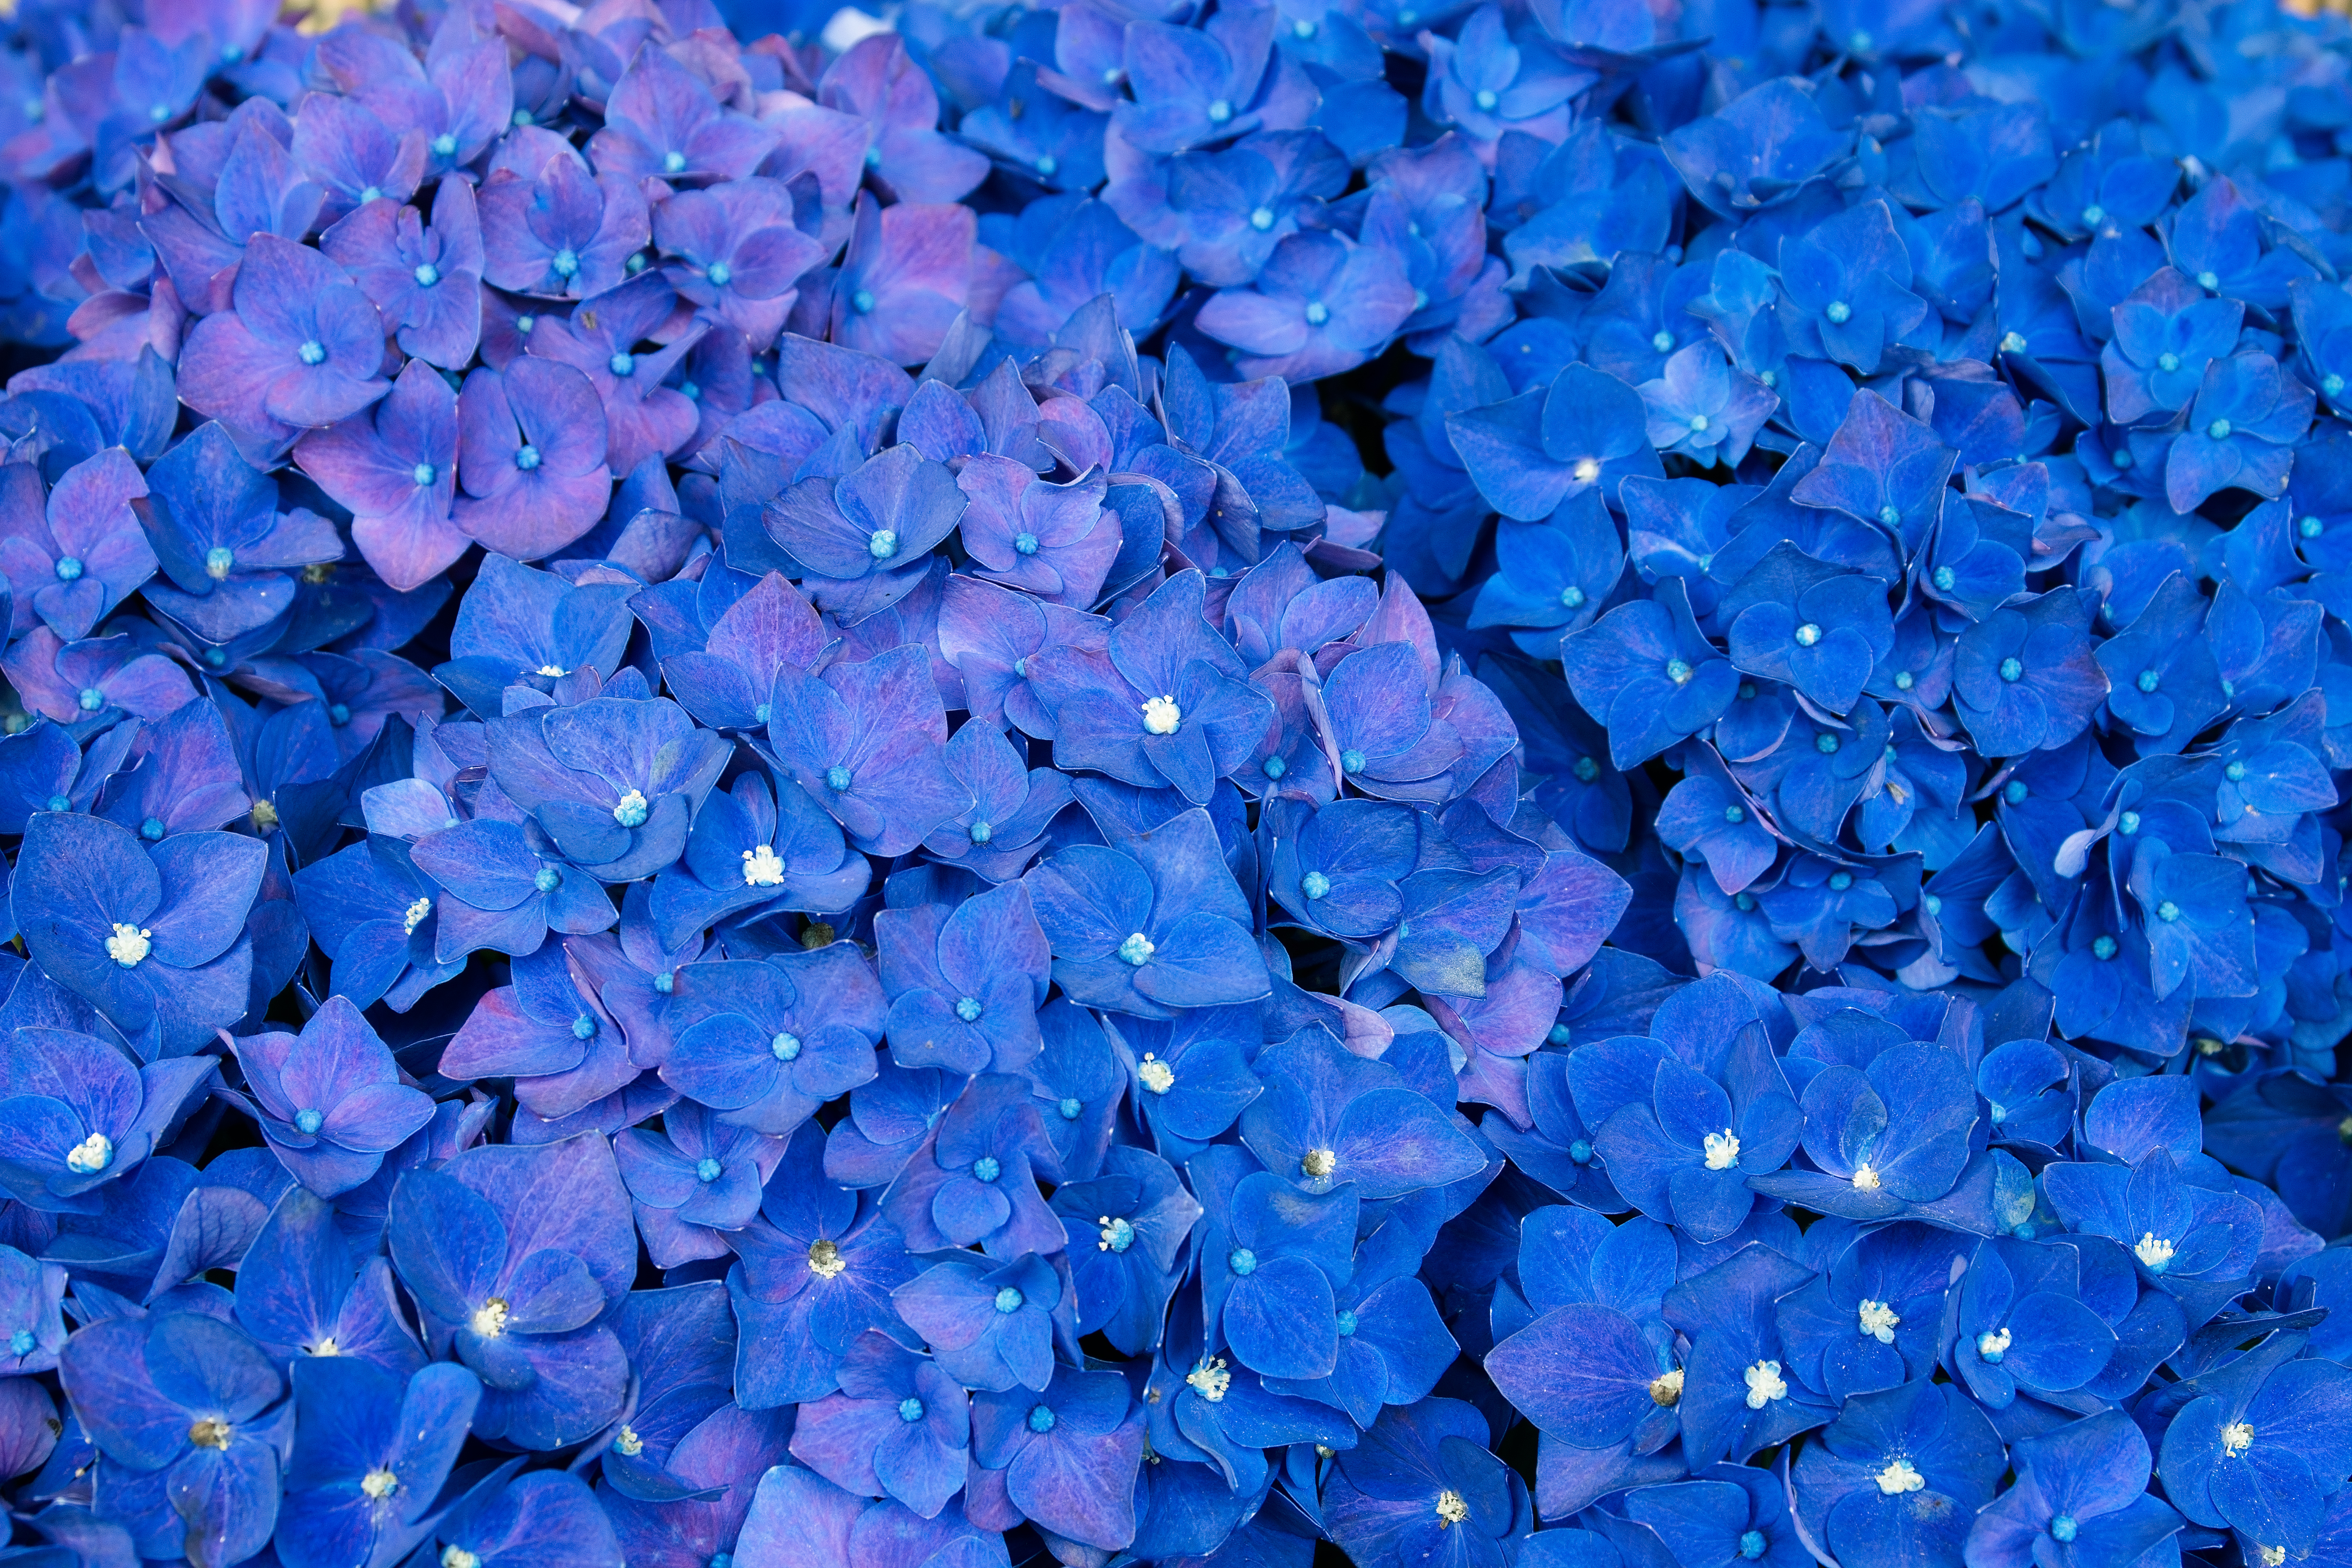 A sea of Blue Hydrangeas